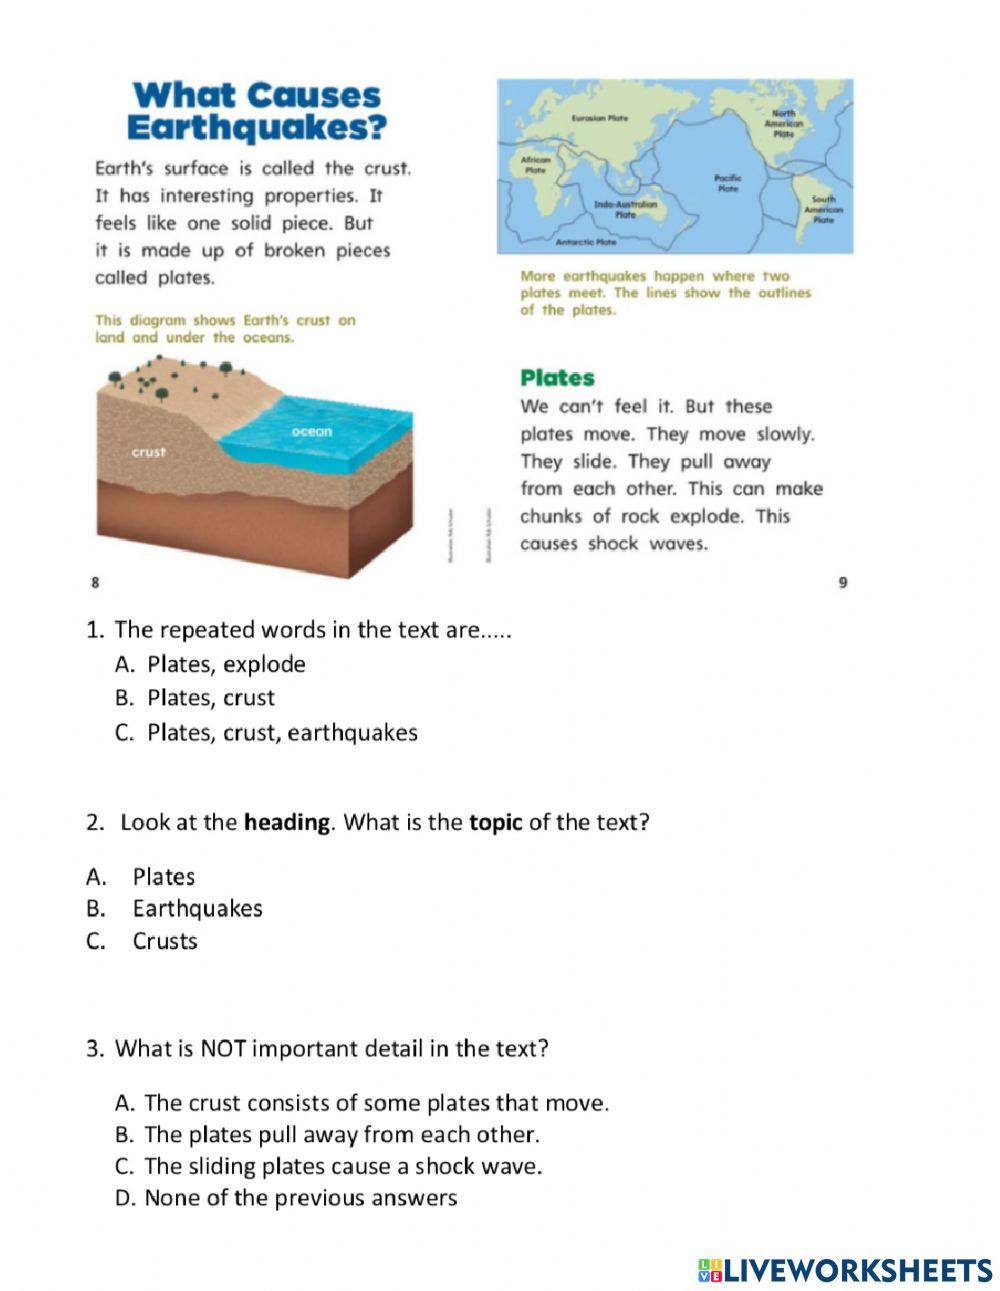 Main Idea and Details (Earthquakes)